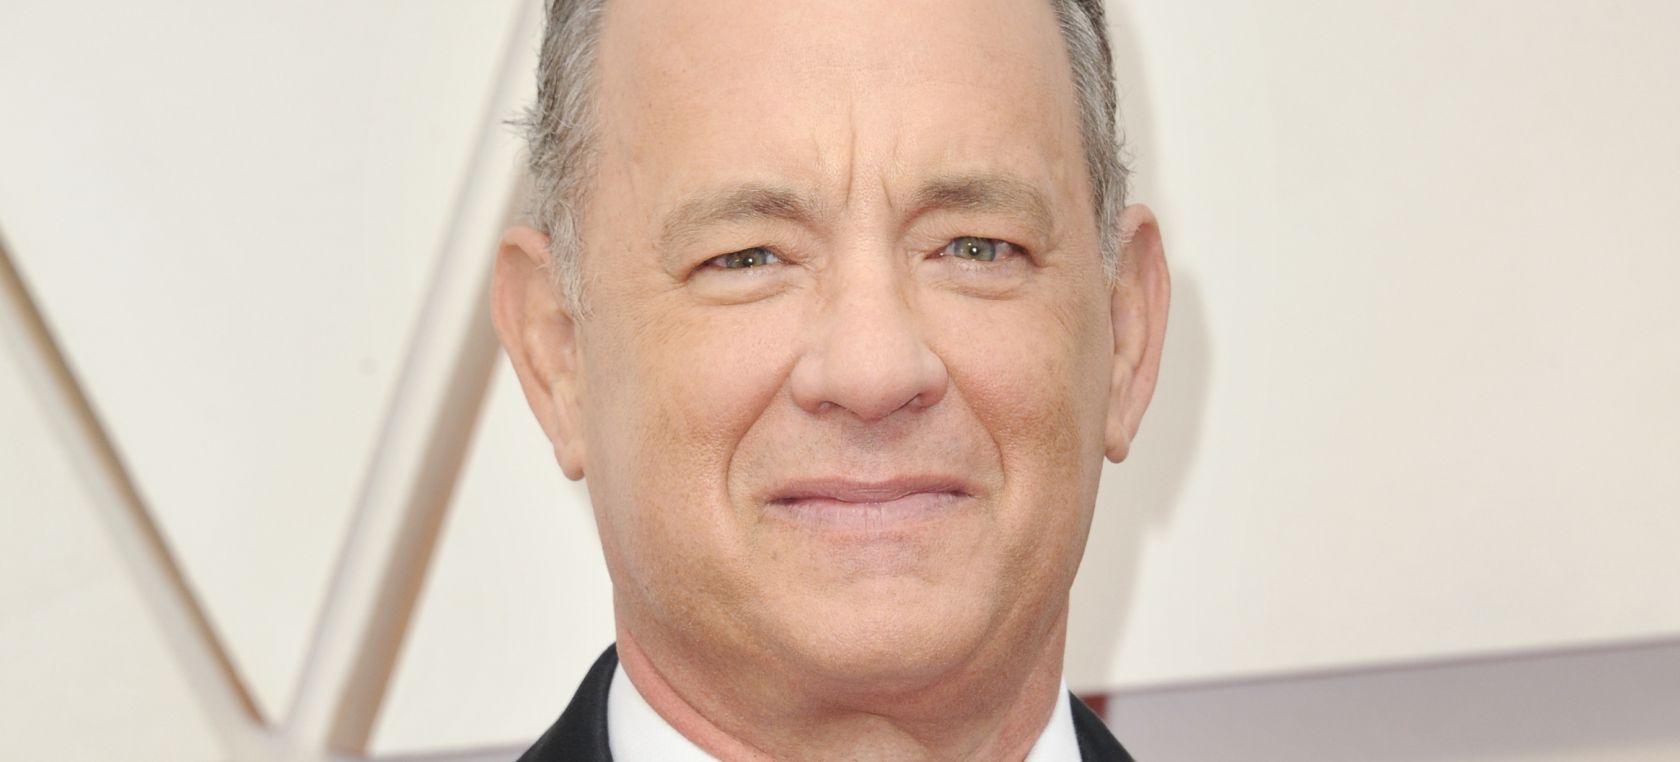 Tom Hanks: el hombre que conquistó América y conoció a más presidentes